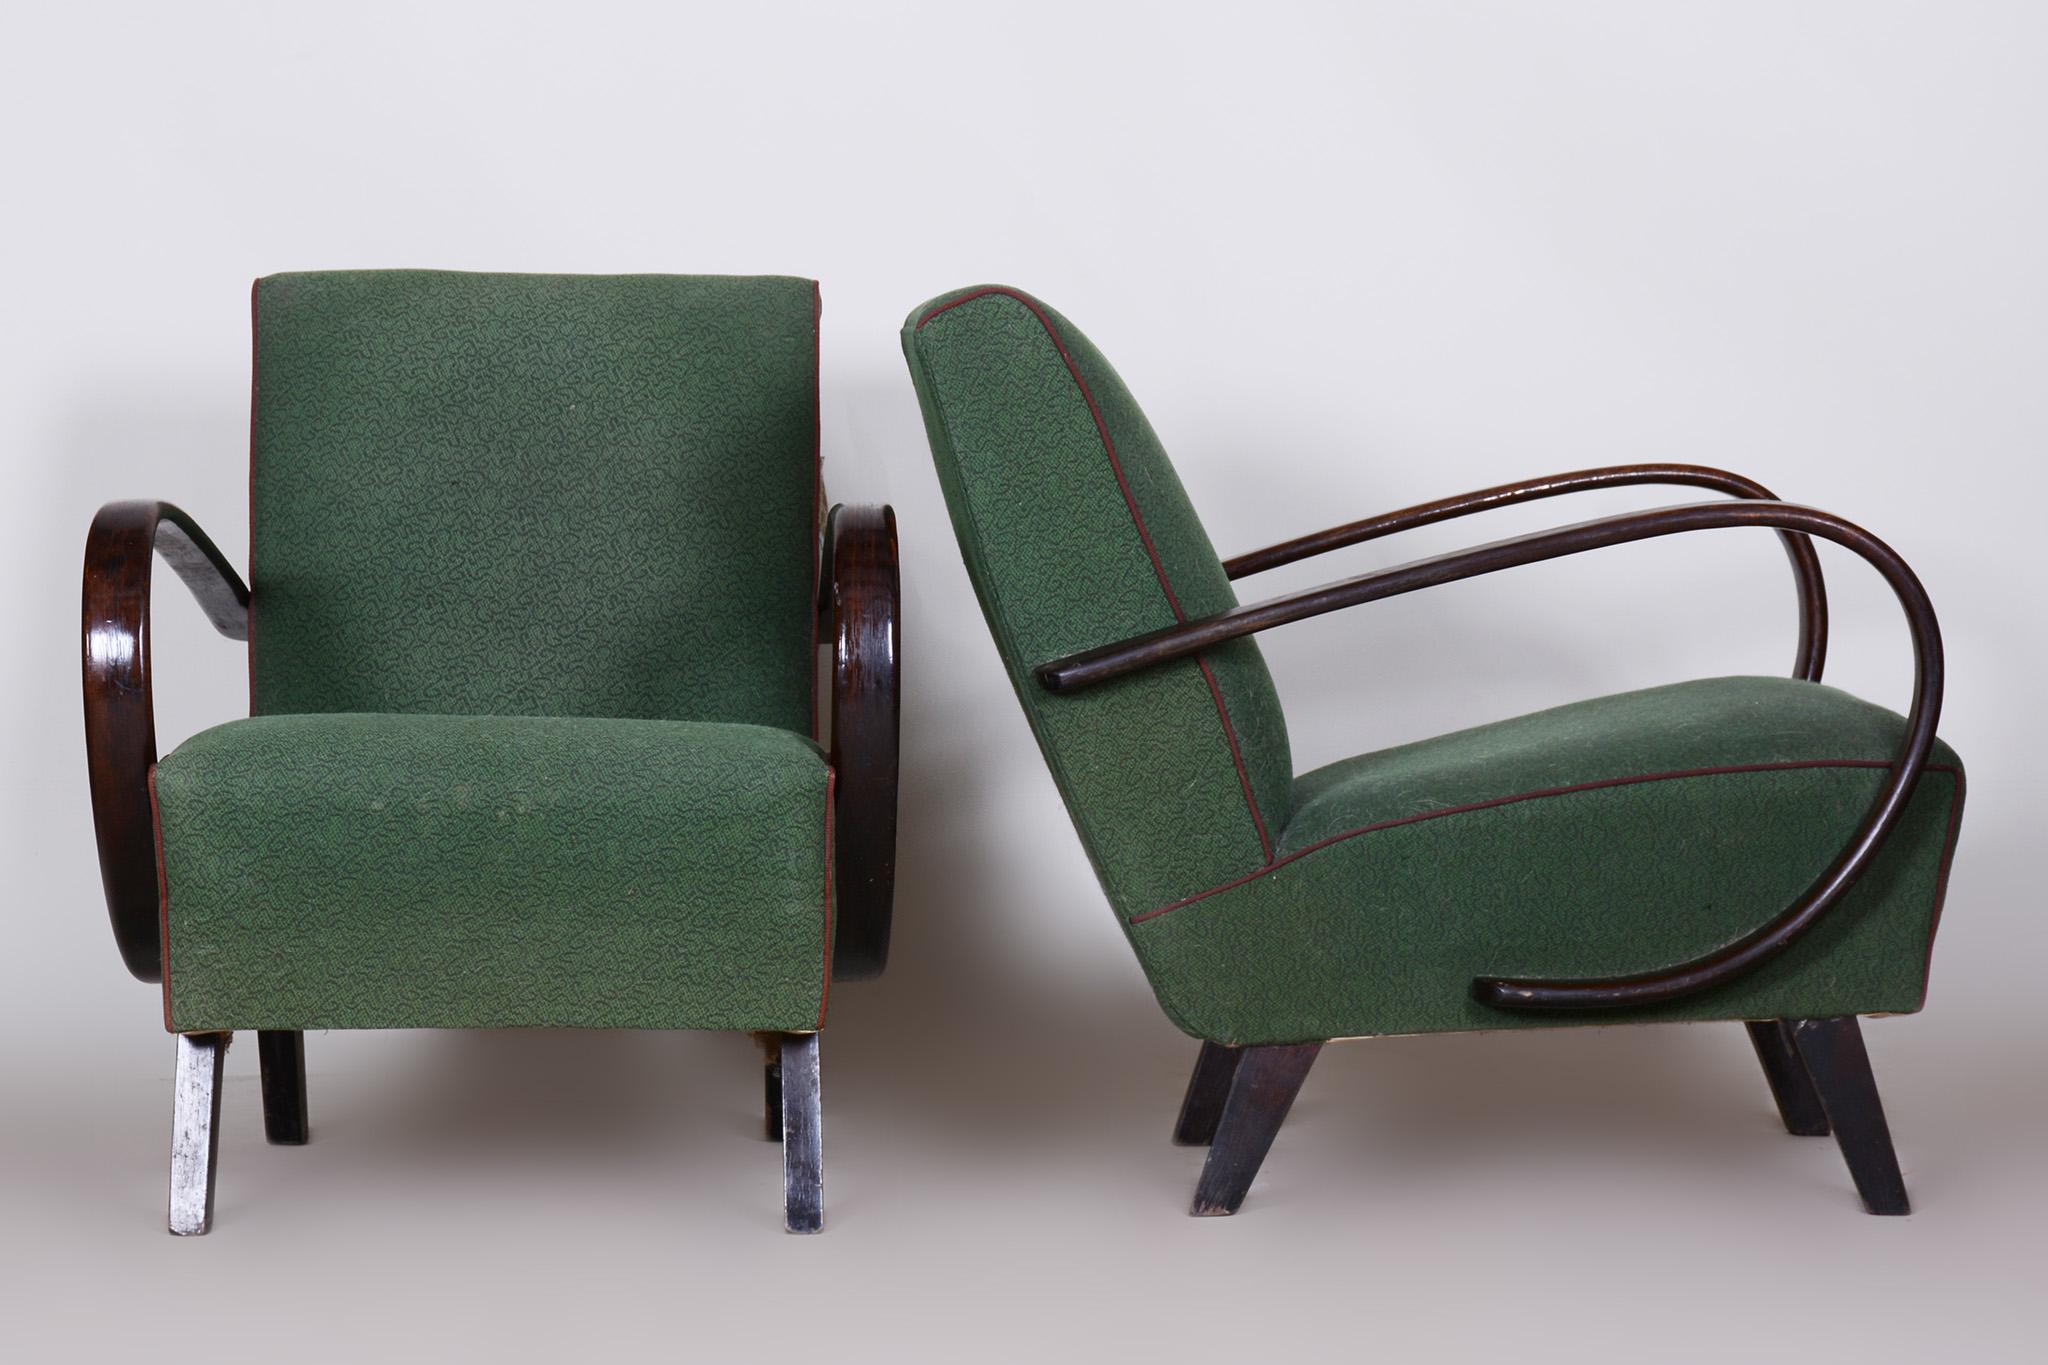 Pair of green Czech Art Deco beech armchairs, Jindrich Halabala.

Source: Czechia 
Period: 1930-1939
Architect: Jindrich Halabala 
Maker: UP Zavody Maker
Material: Beech, fabric

Original preserved upholstery.
The fabric has been